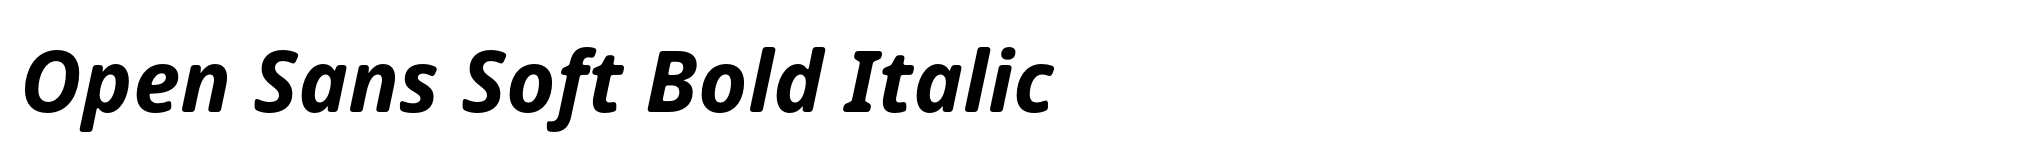 Open Sans Soft Bold Italic image